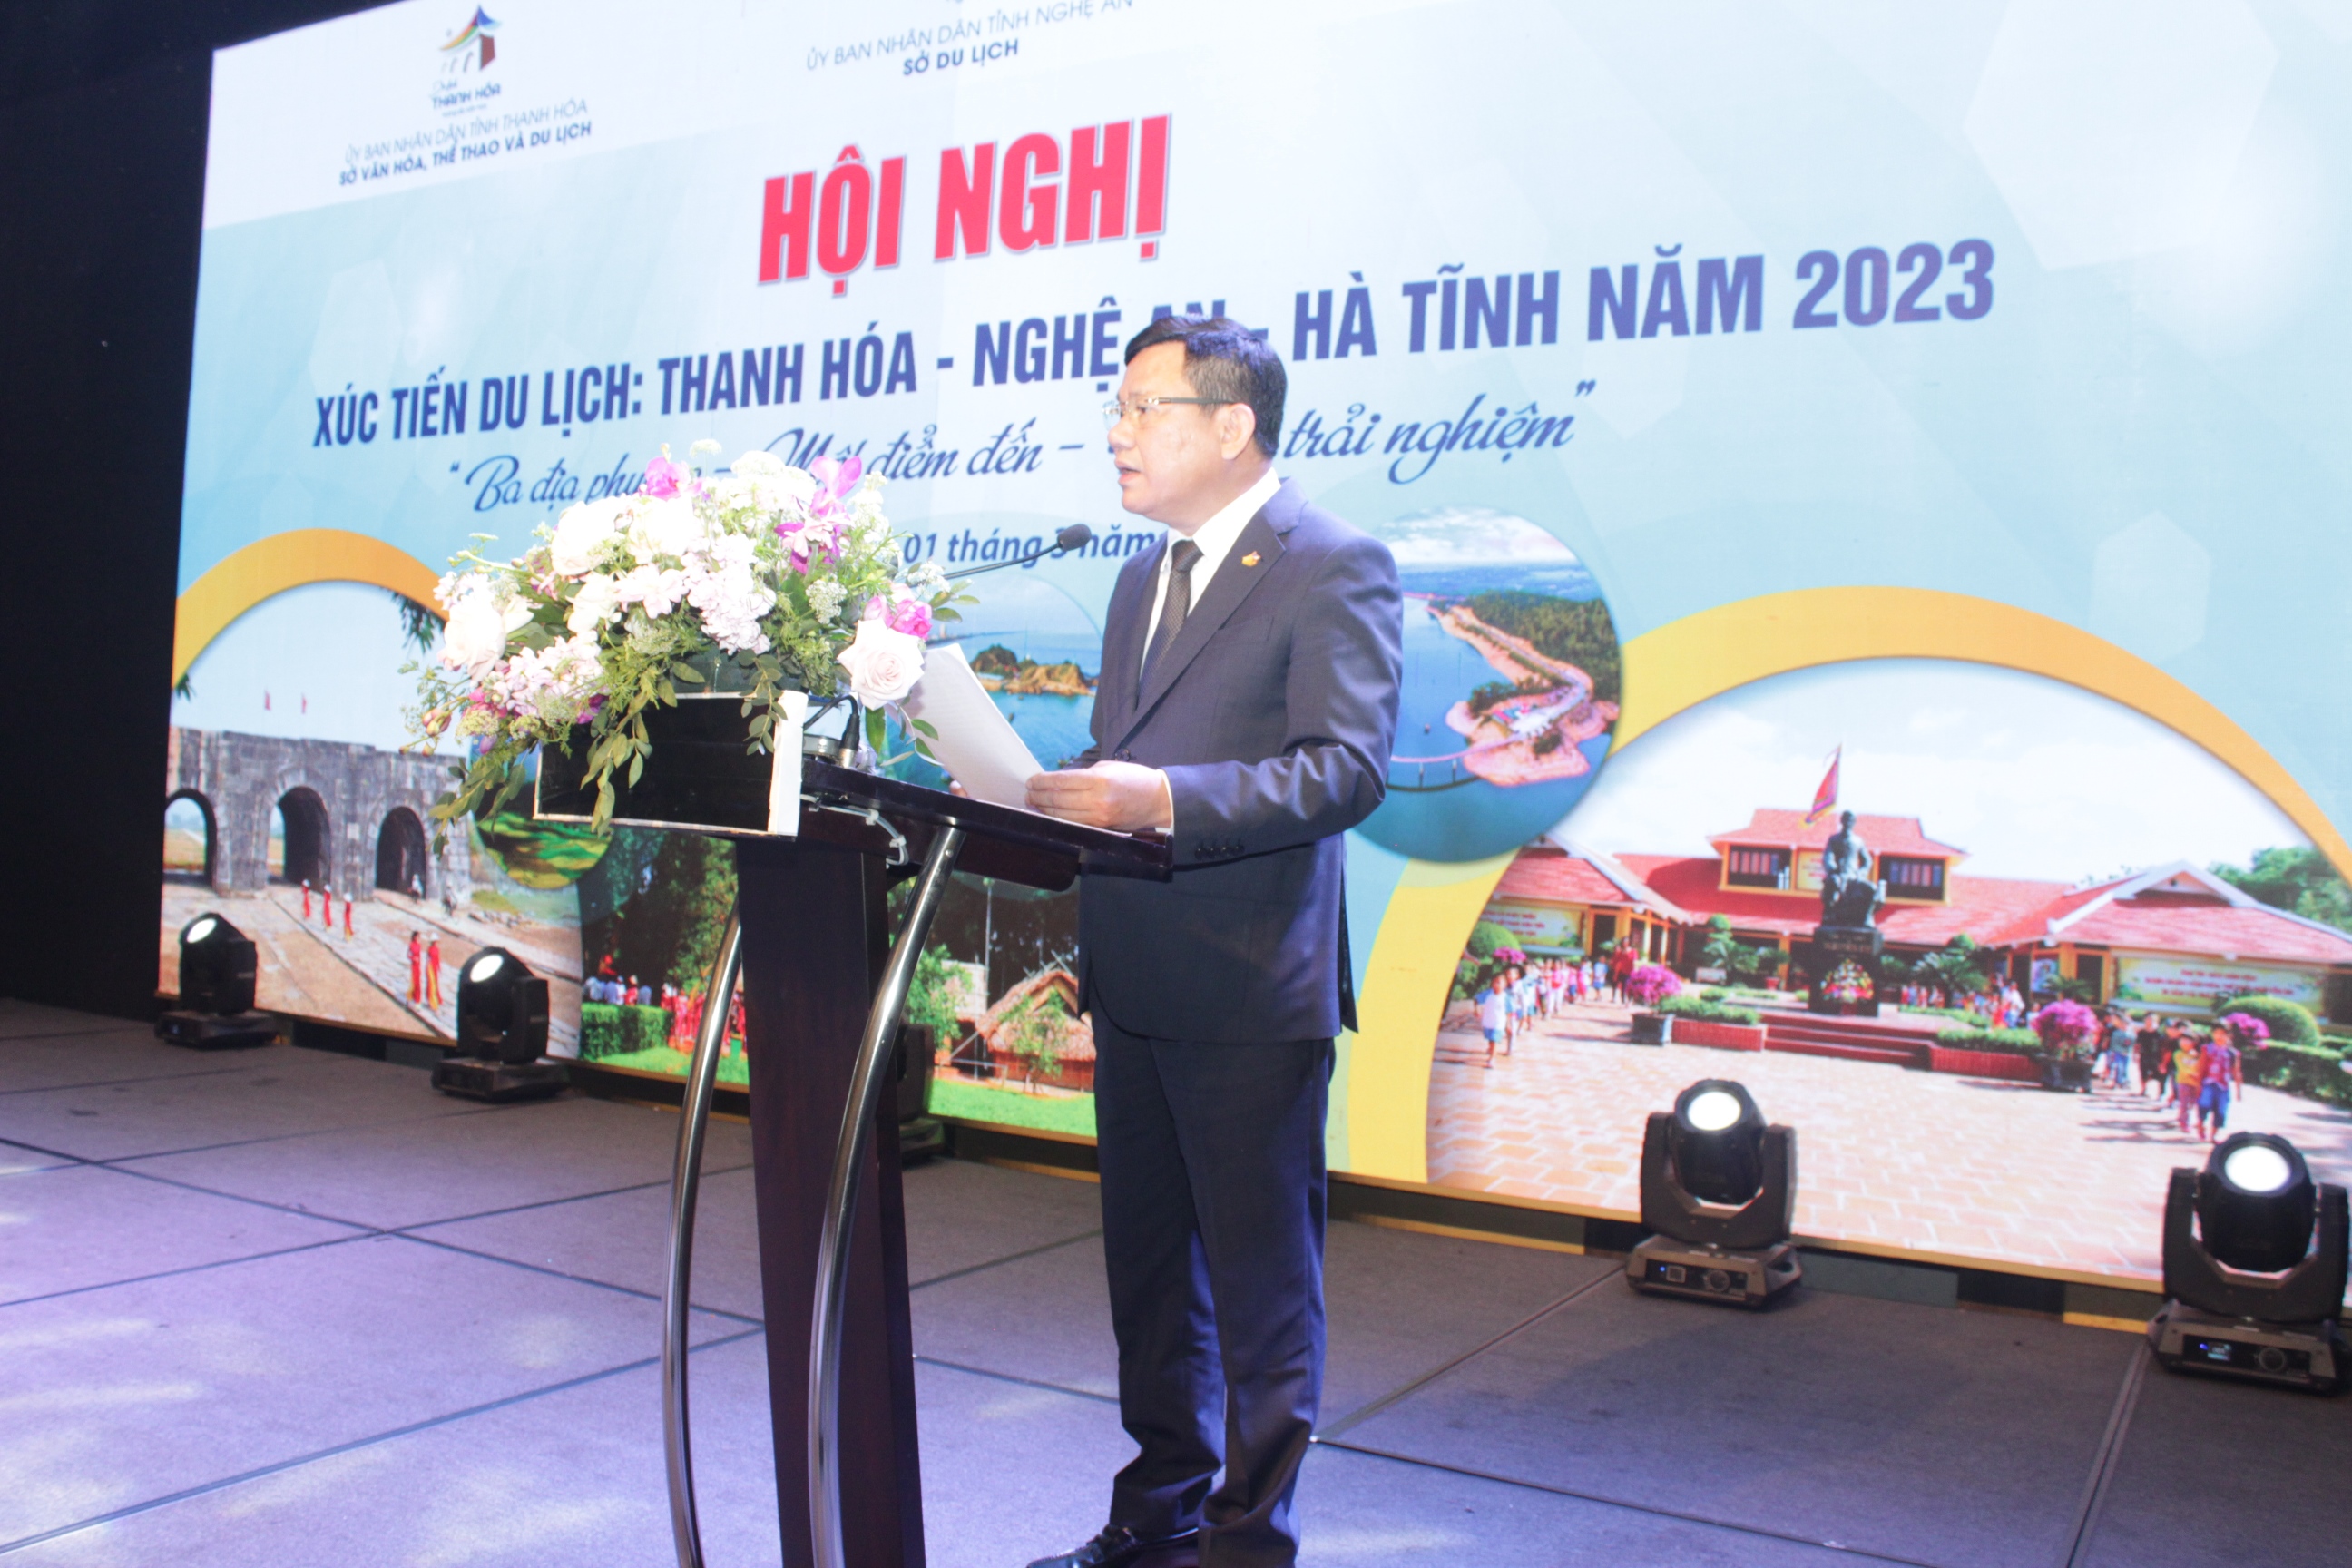 1.	Phó Chủ tịch UBND tỉnh Thanh Hóa Nguyễn Văn Thi phát biểu chào mừng